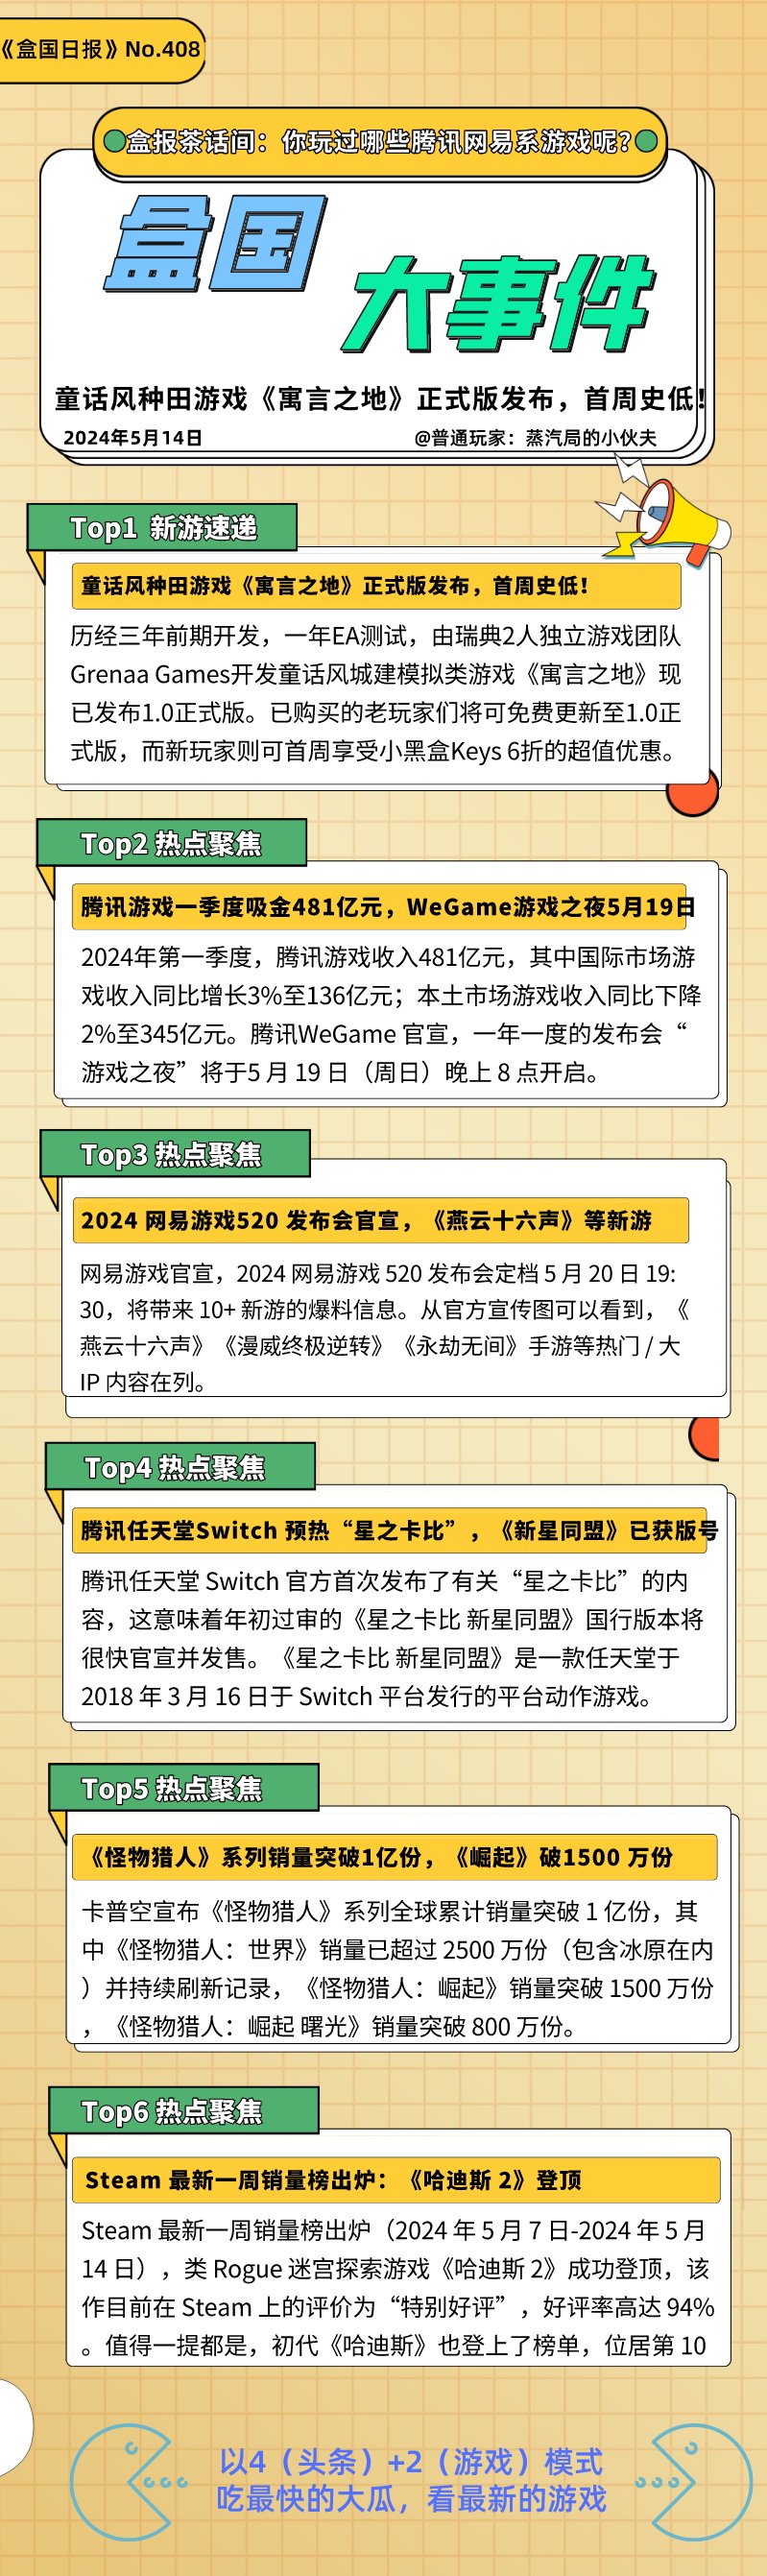 腾讯WeGame游戏之夜定档5月19日 VS 网易游戏发布会定档5月20日